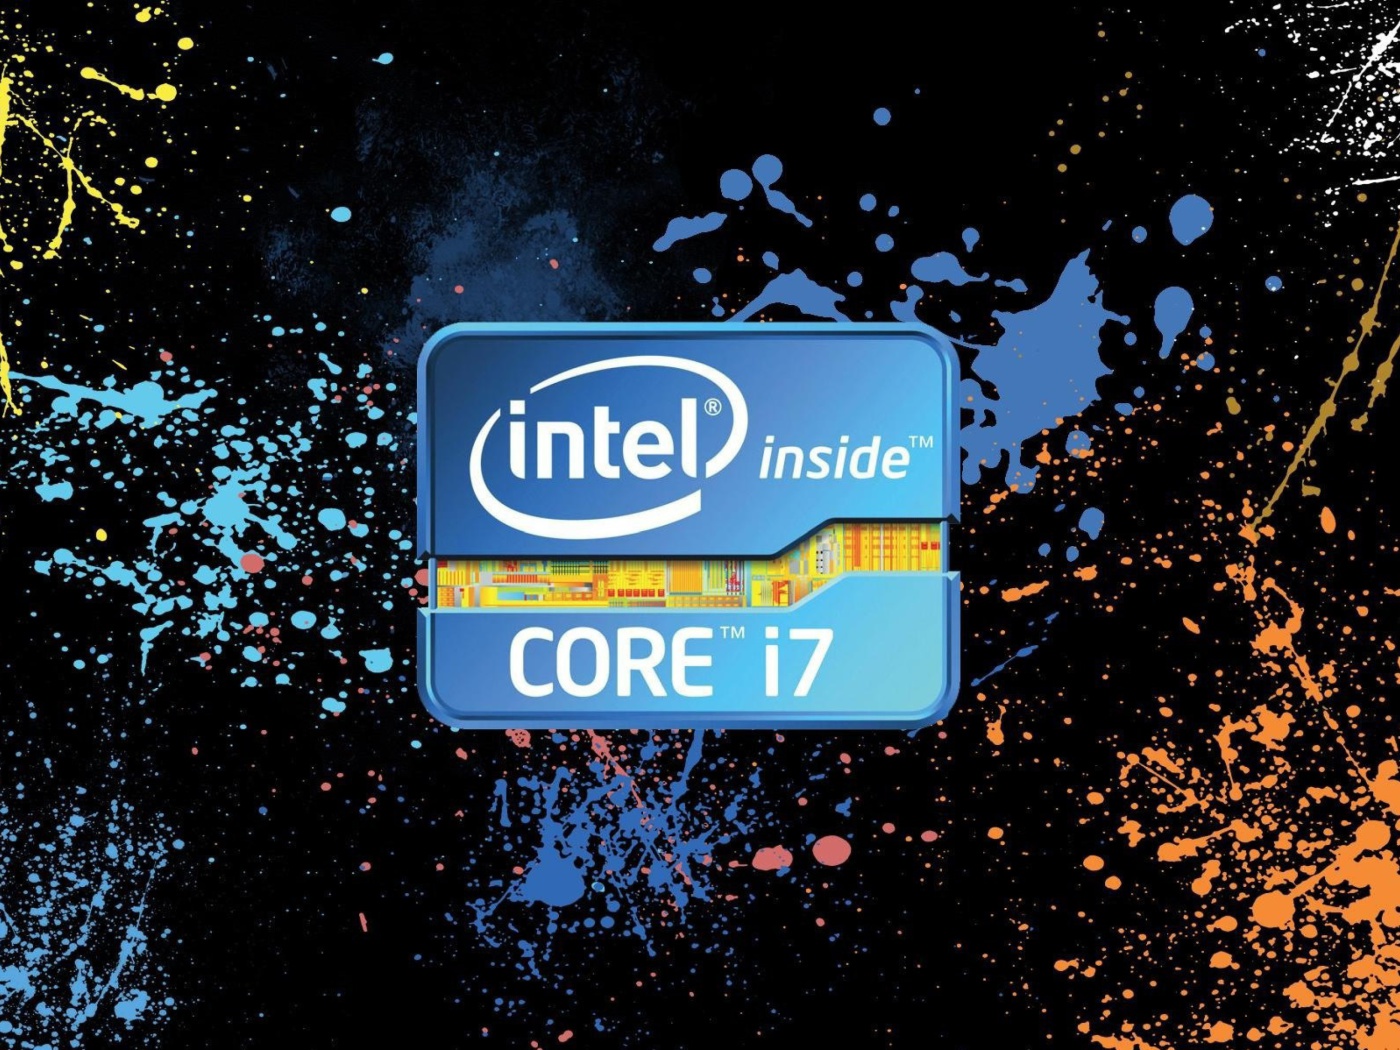 Intel Core i7 wallpaper 1400x1050